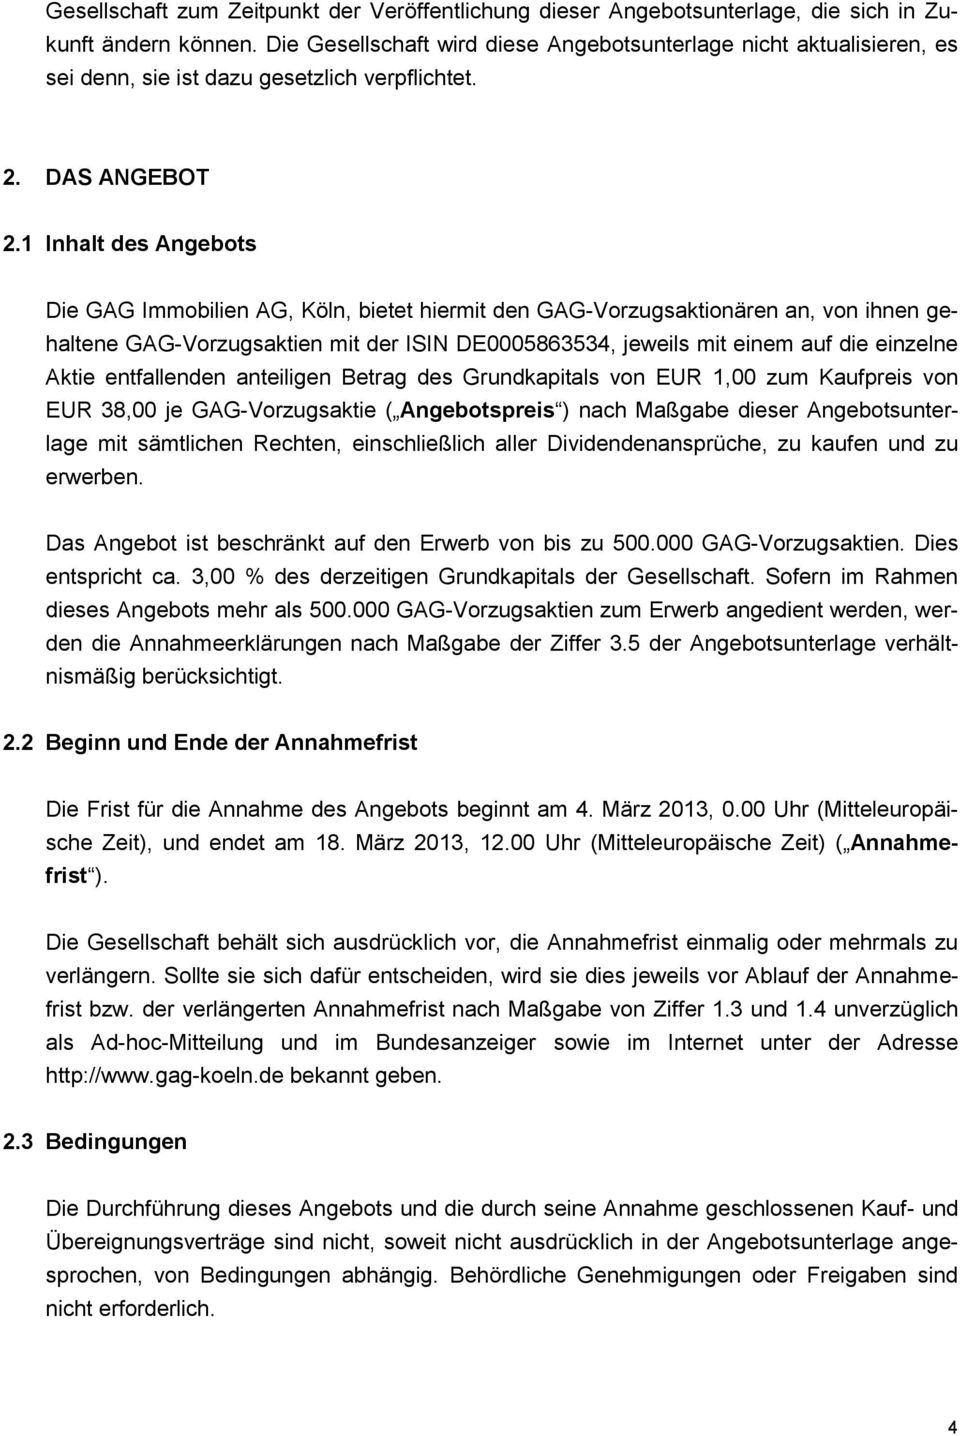 1 Inhalt des Angebots Die GAG Immobilien AG, Köln, bietet hiermit den GAG-Vorzugsaktionären an, von ihnen gehaltene GAG-Vorzugsaktien mit der ISIN DE0005863534, jeweils mit einem auf die einzelne